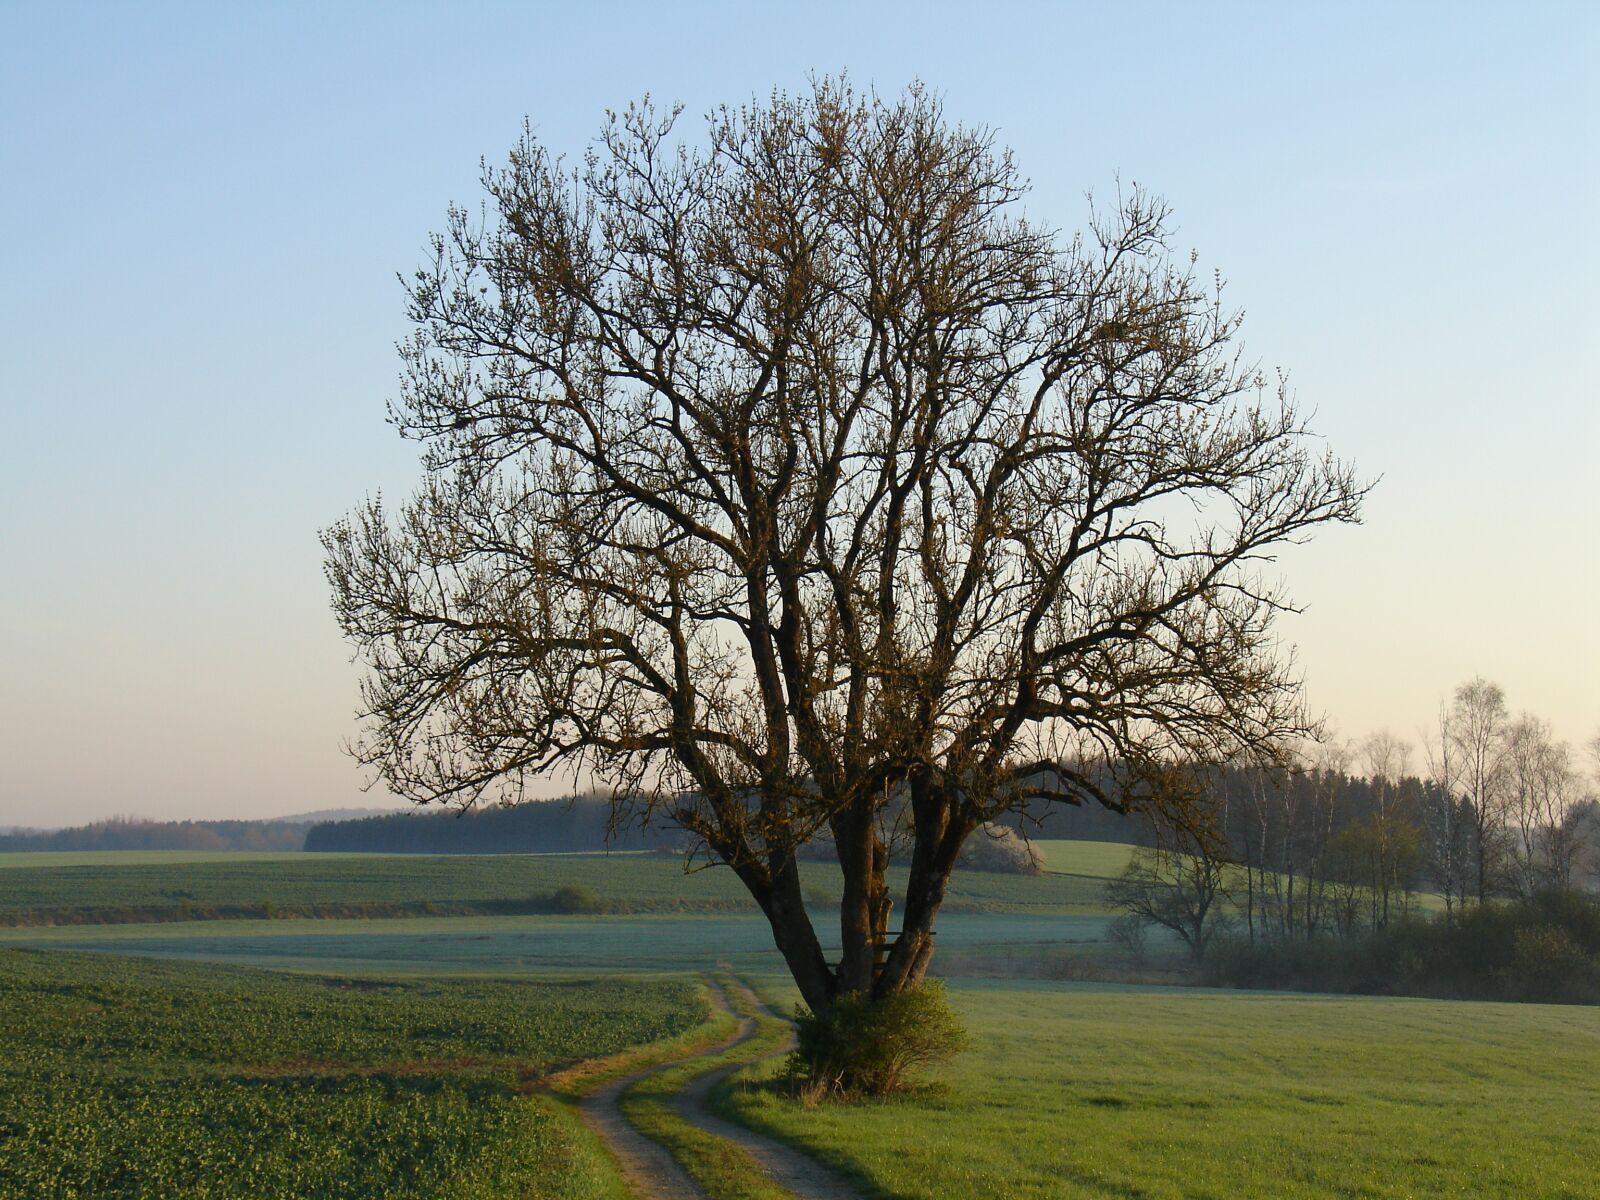 Sony DSC-V3 sample photo. Tree, landscape, nature photography